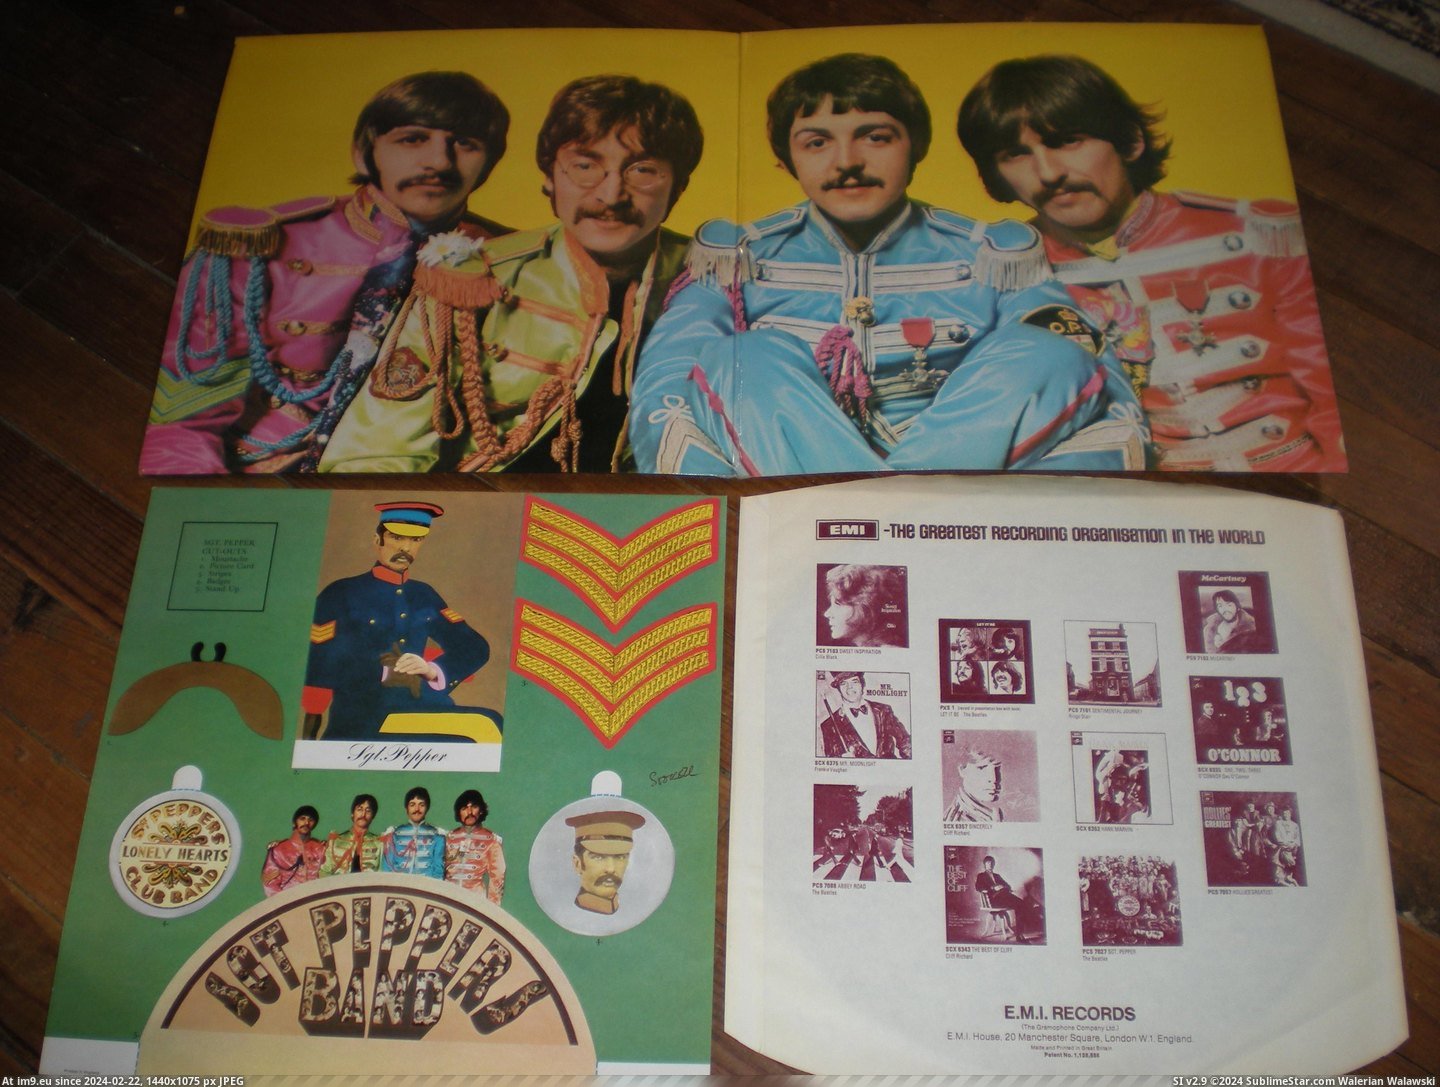 #Two #Sgt #Box Sgt TWO BOX 7 Pic. (Bild von album new 1))